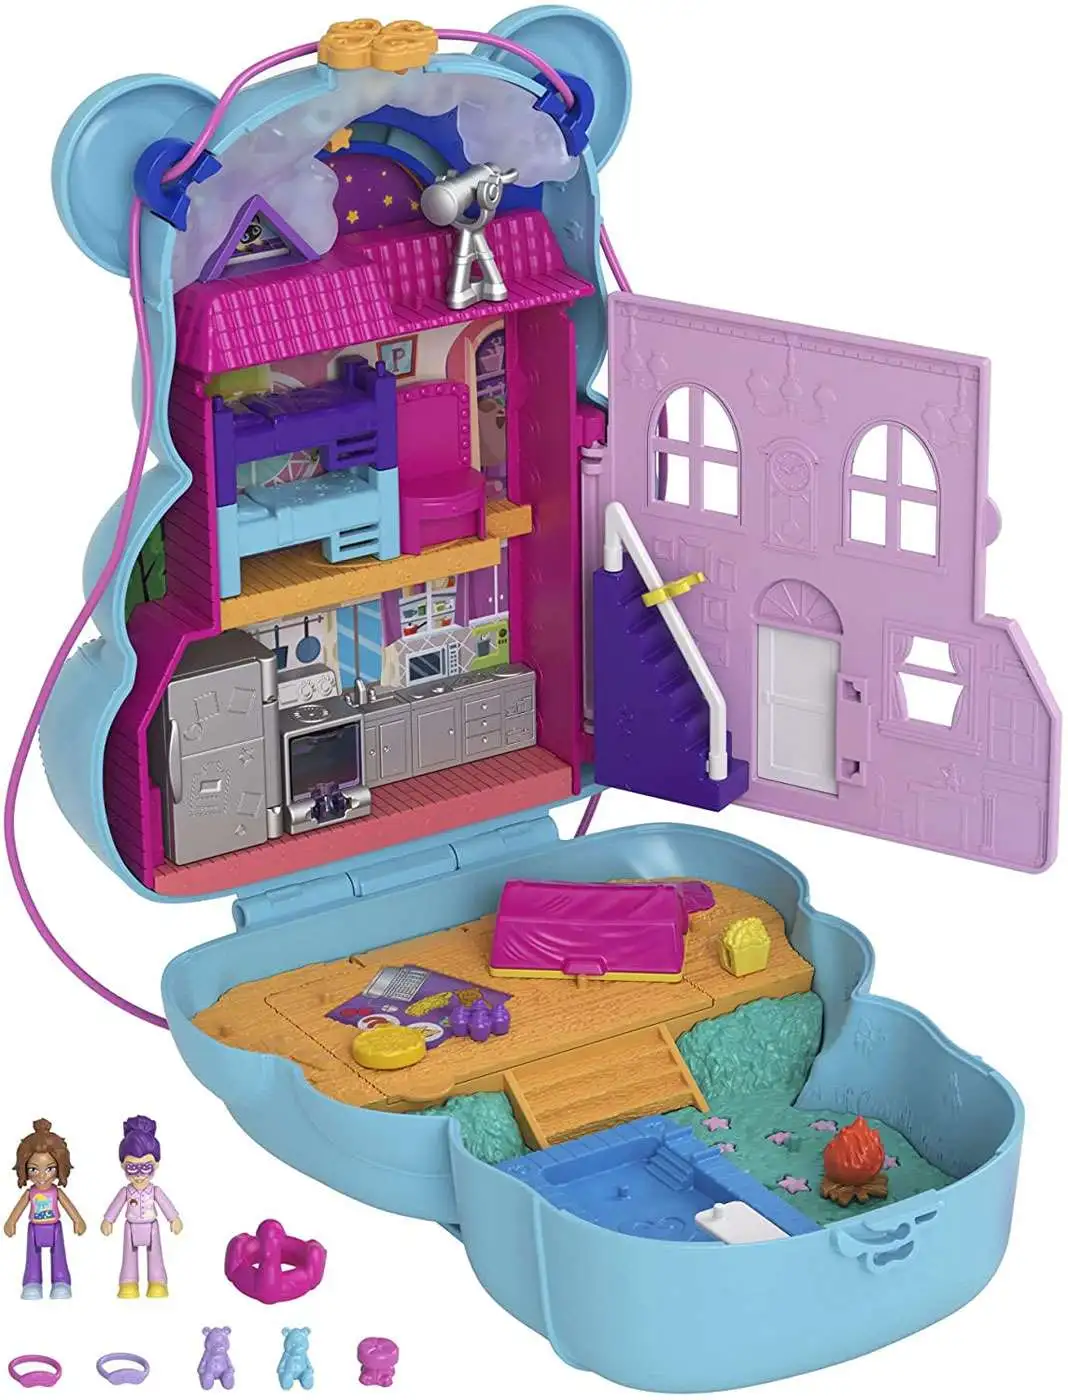 Polly Pocket Teddy Bear Purse Micro Playset Mattel Toys - ToyWiz